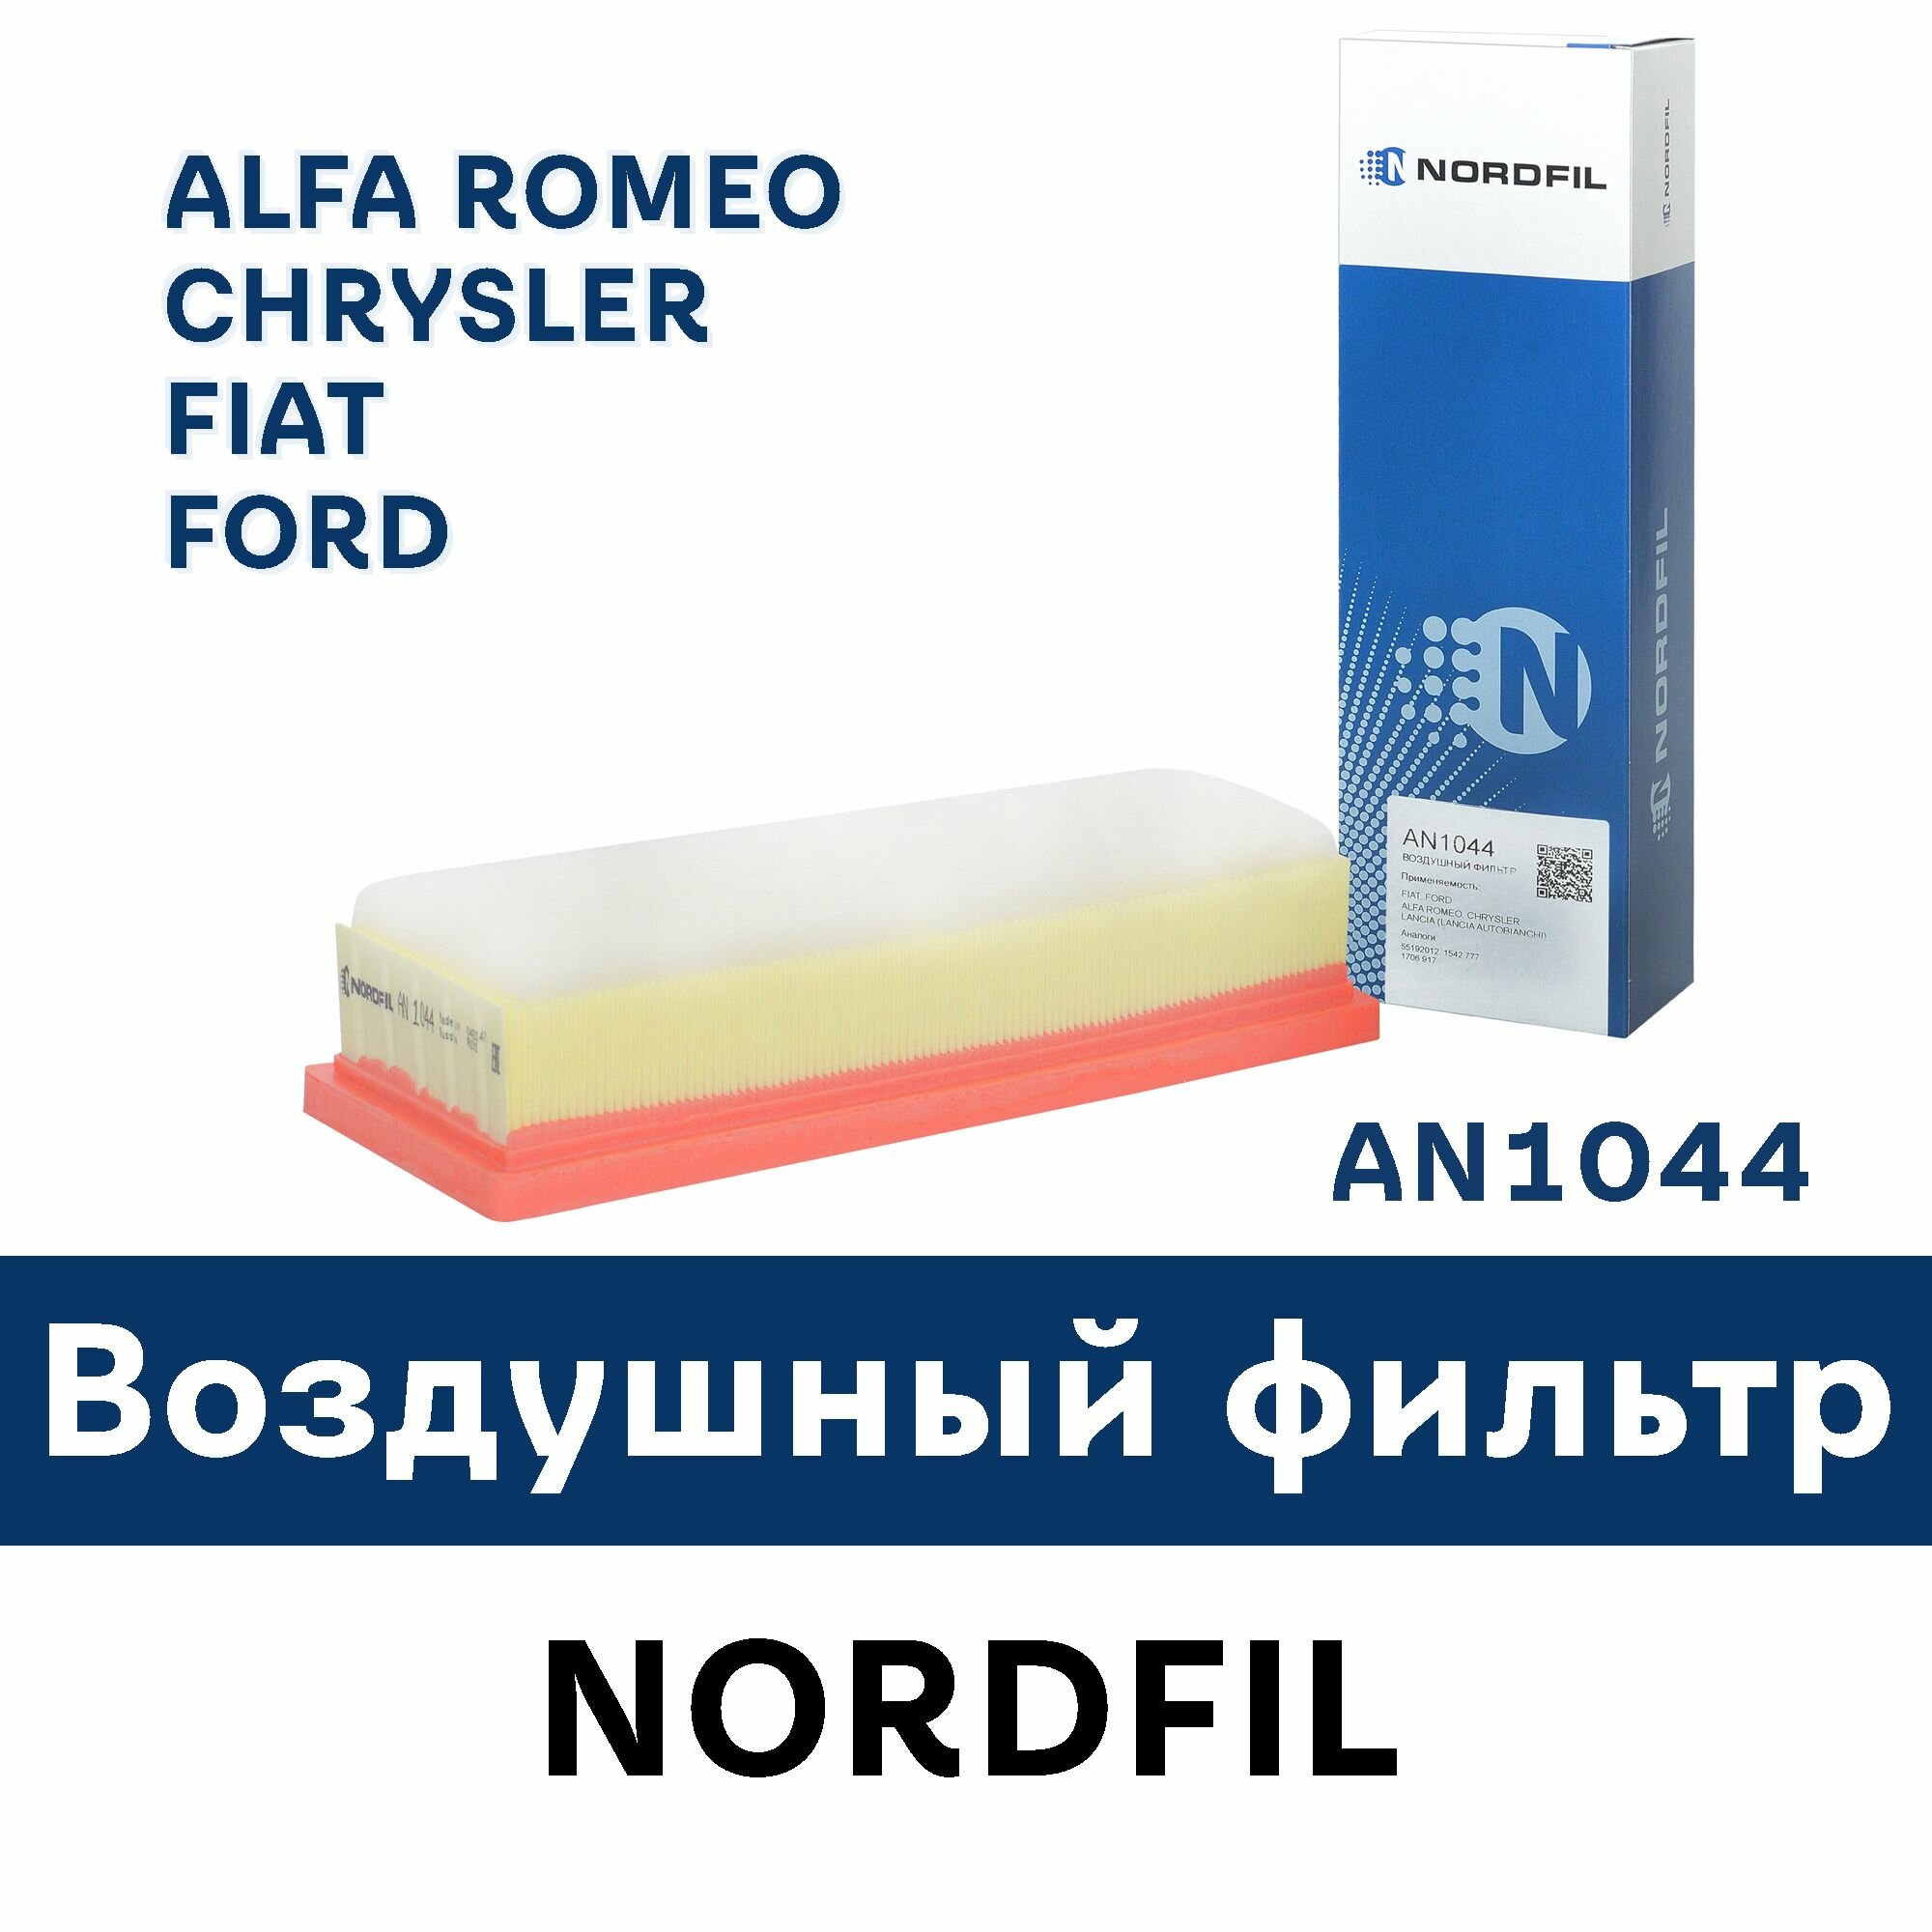 Воздушный фильтр для ALFA ROMEO, CHRYSLER, FIAT, FORD AN1044 NORDFIL